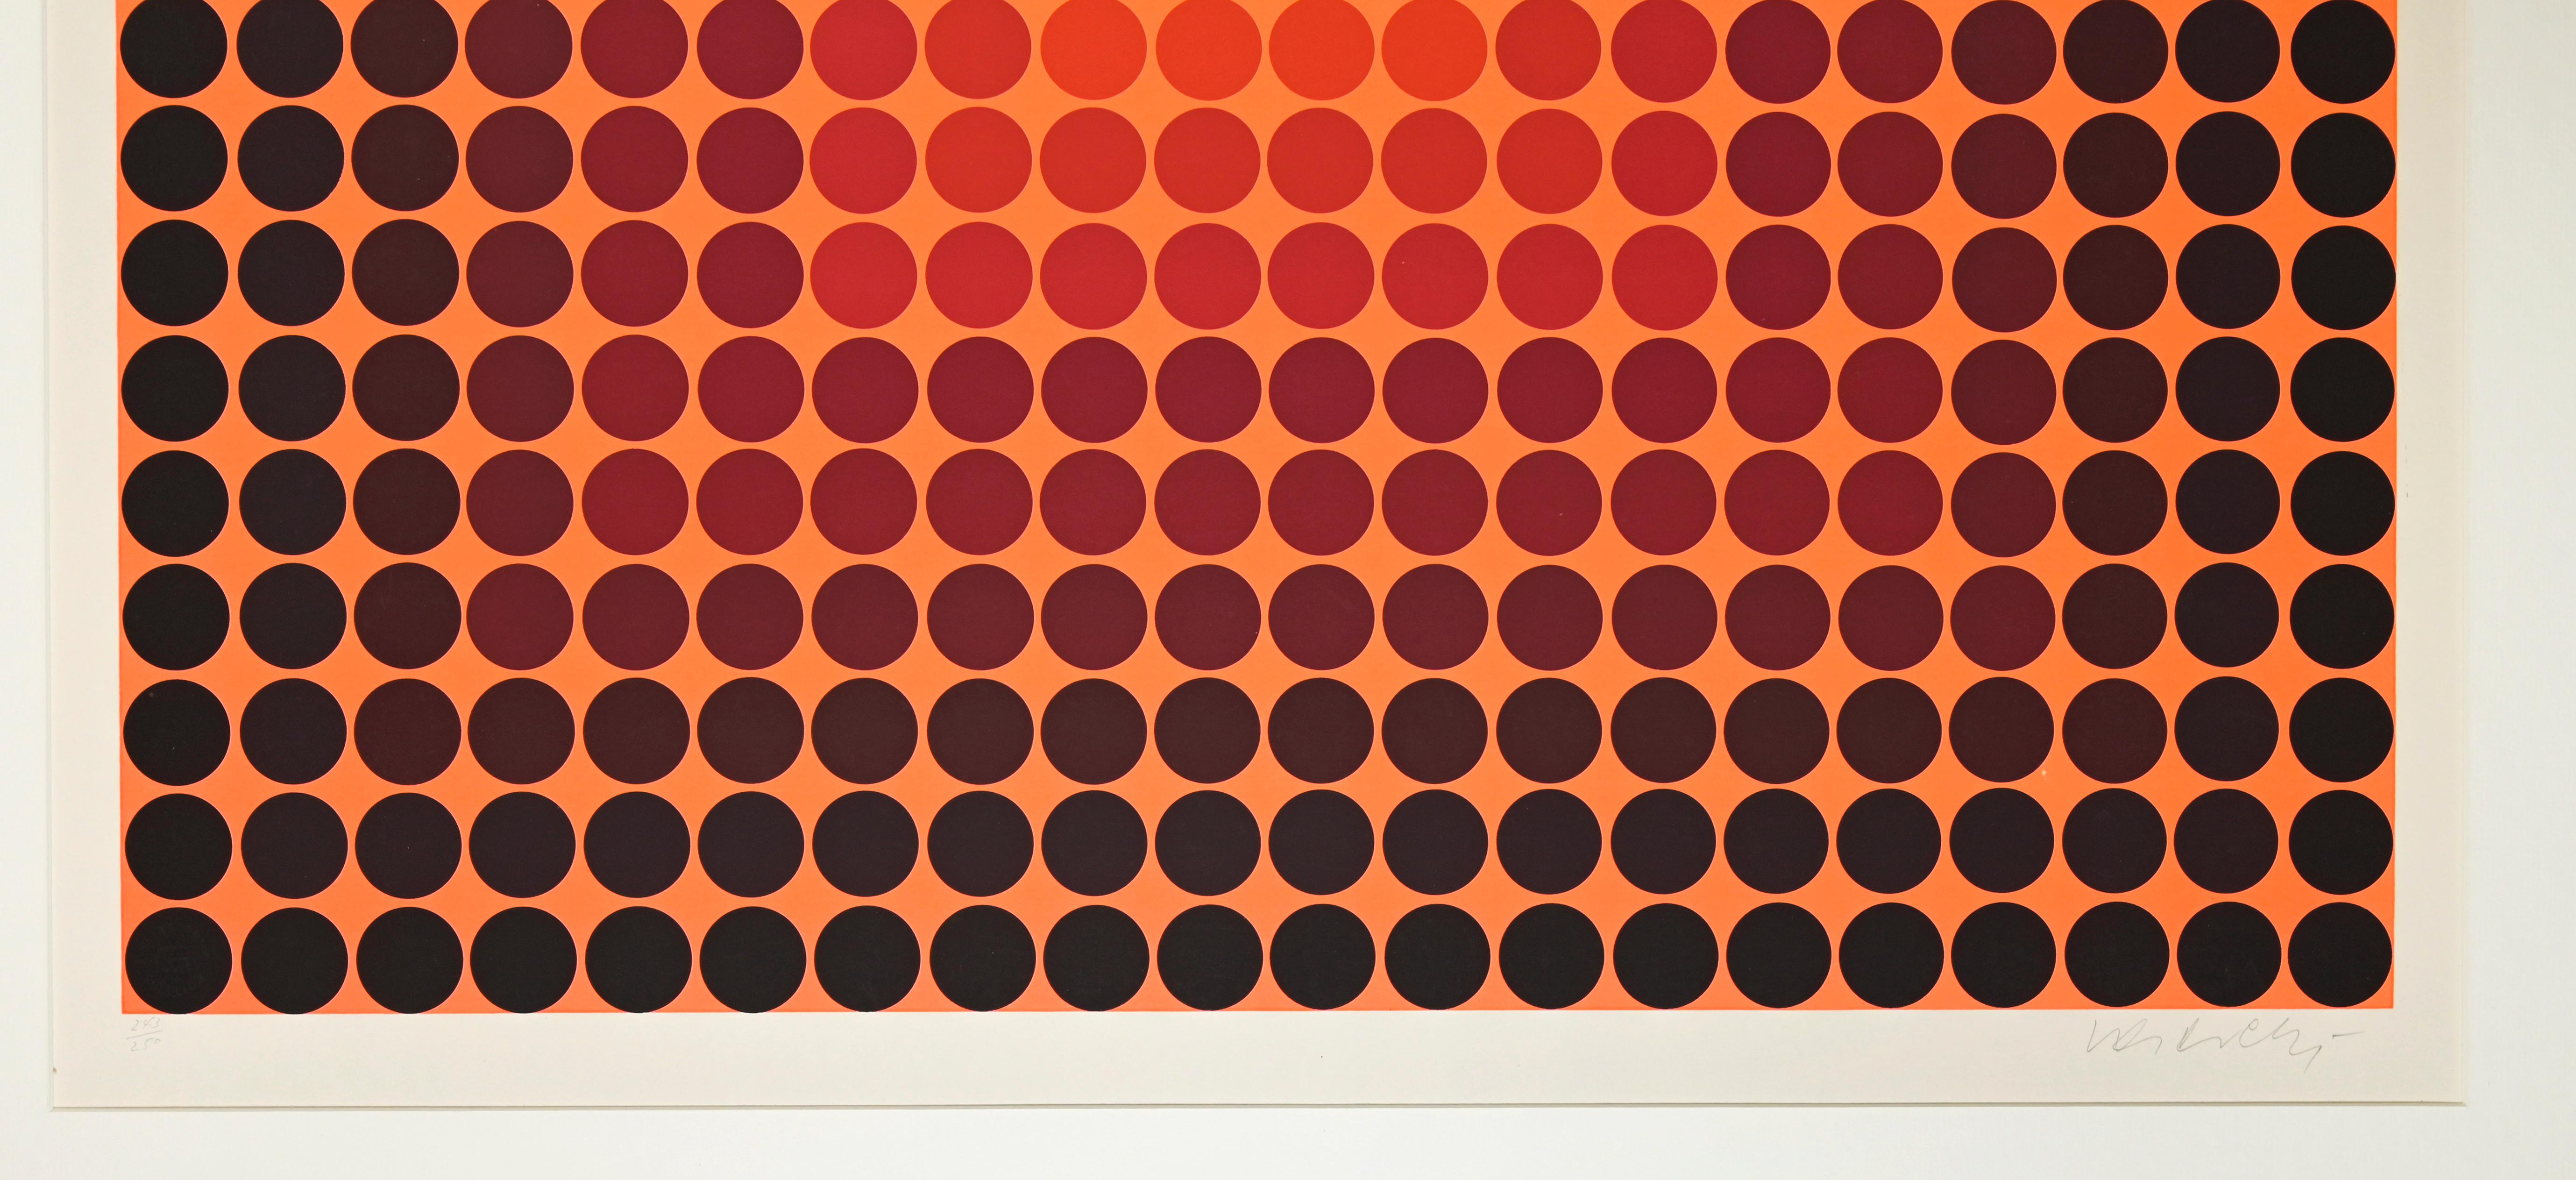 Schwarze Punkten auf Orange – Siebdruck von V. Vasarely – 1965 – Print von Victor Vasarely